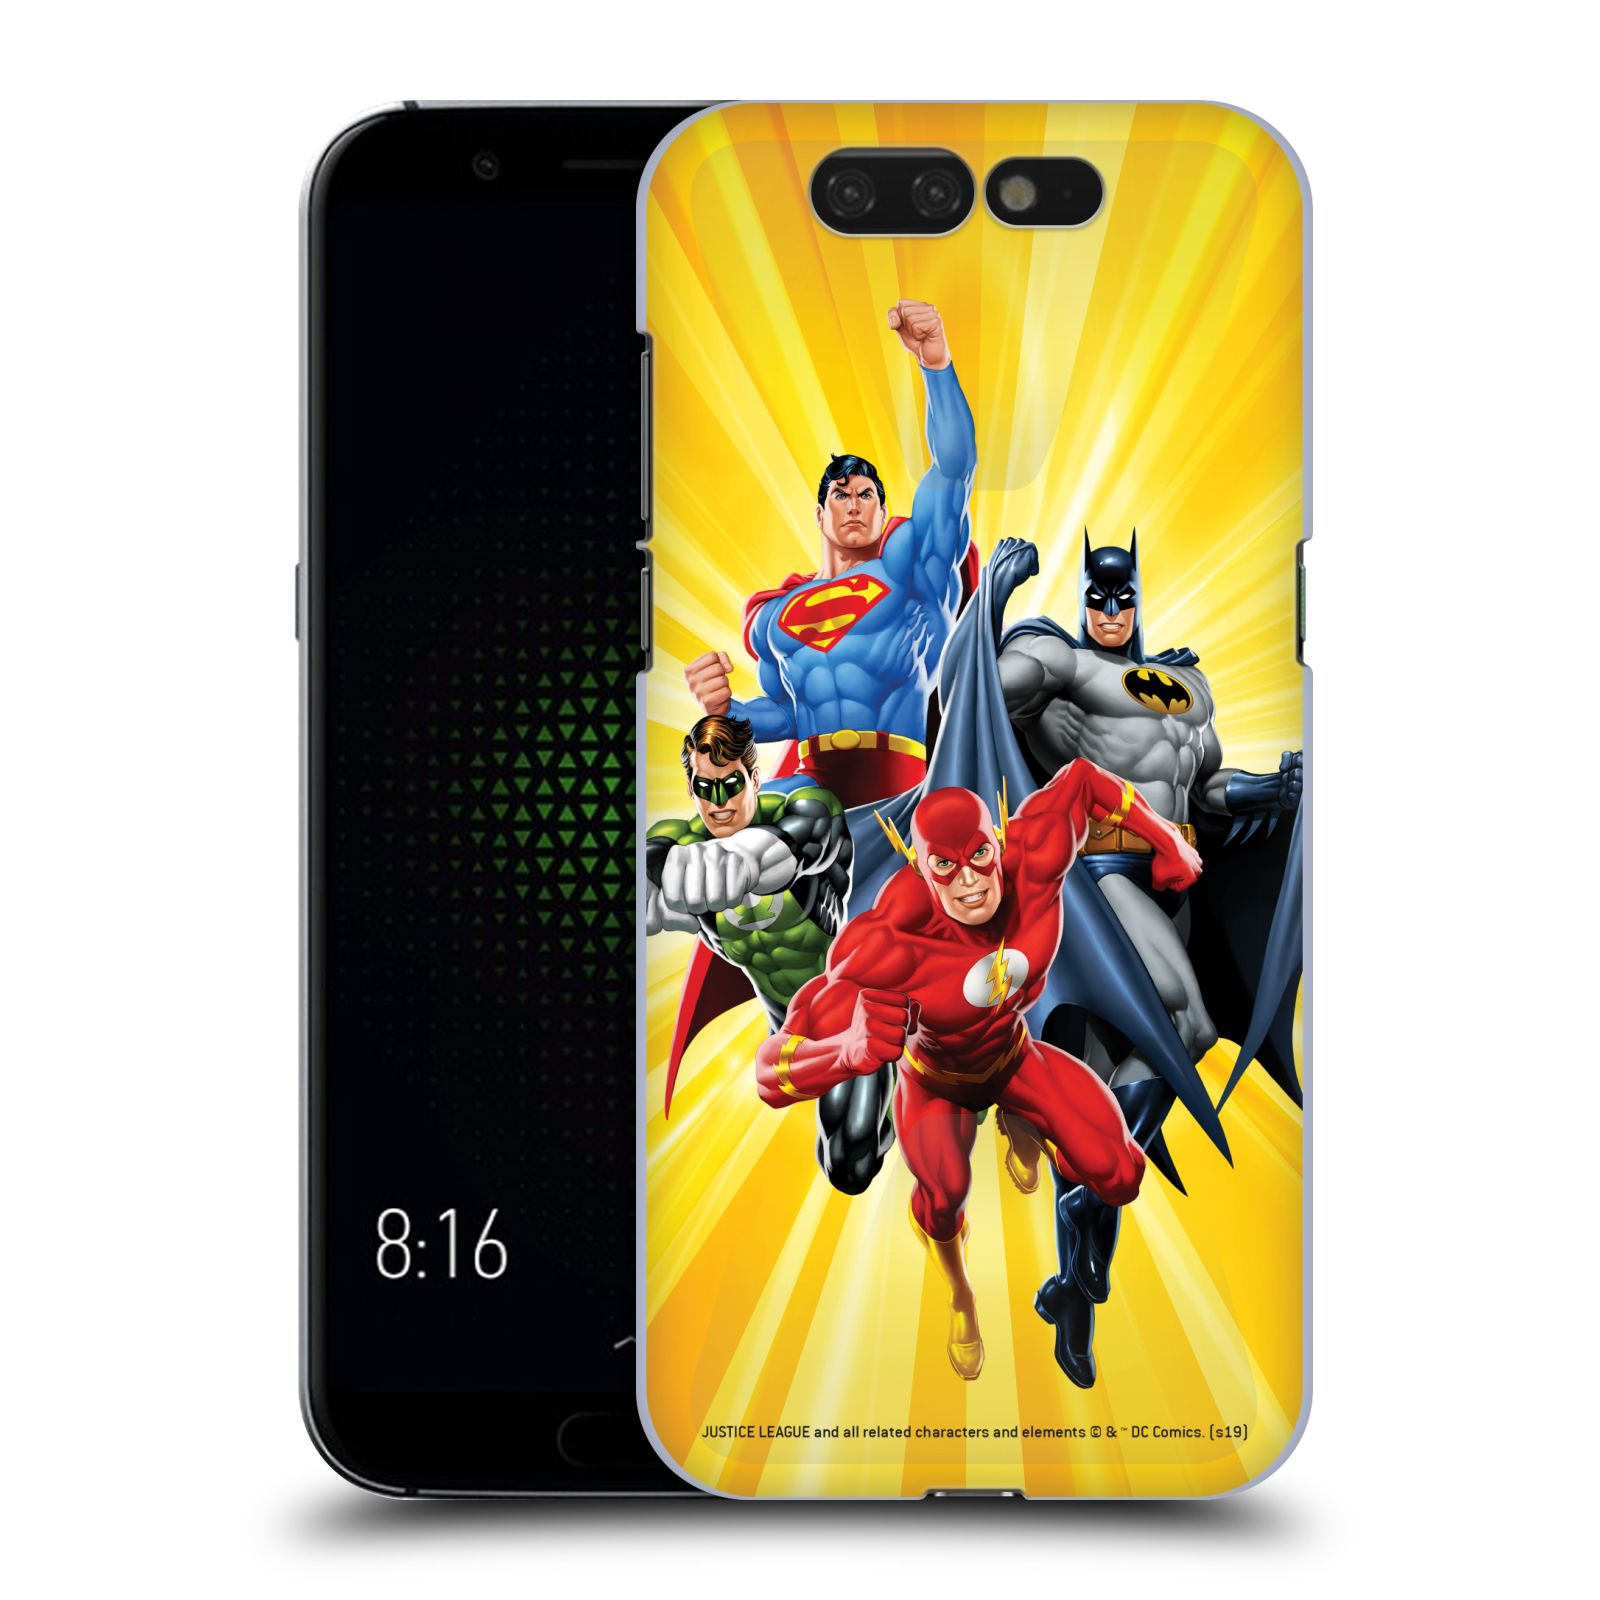 Pouzdro na mobil Xiaomi Black Shark - HEAD CASE - DC komix Liga Spravedlivých hrdinové Flash